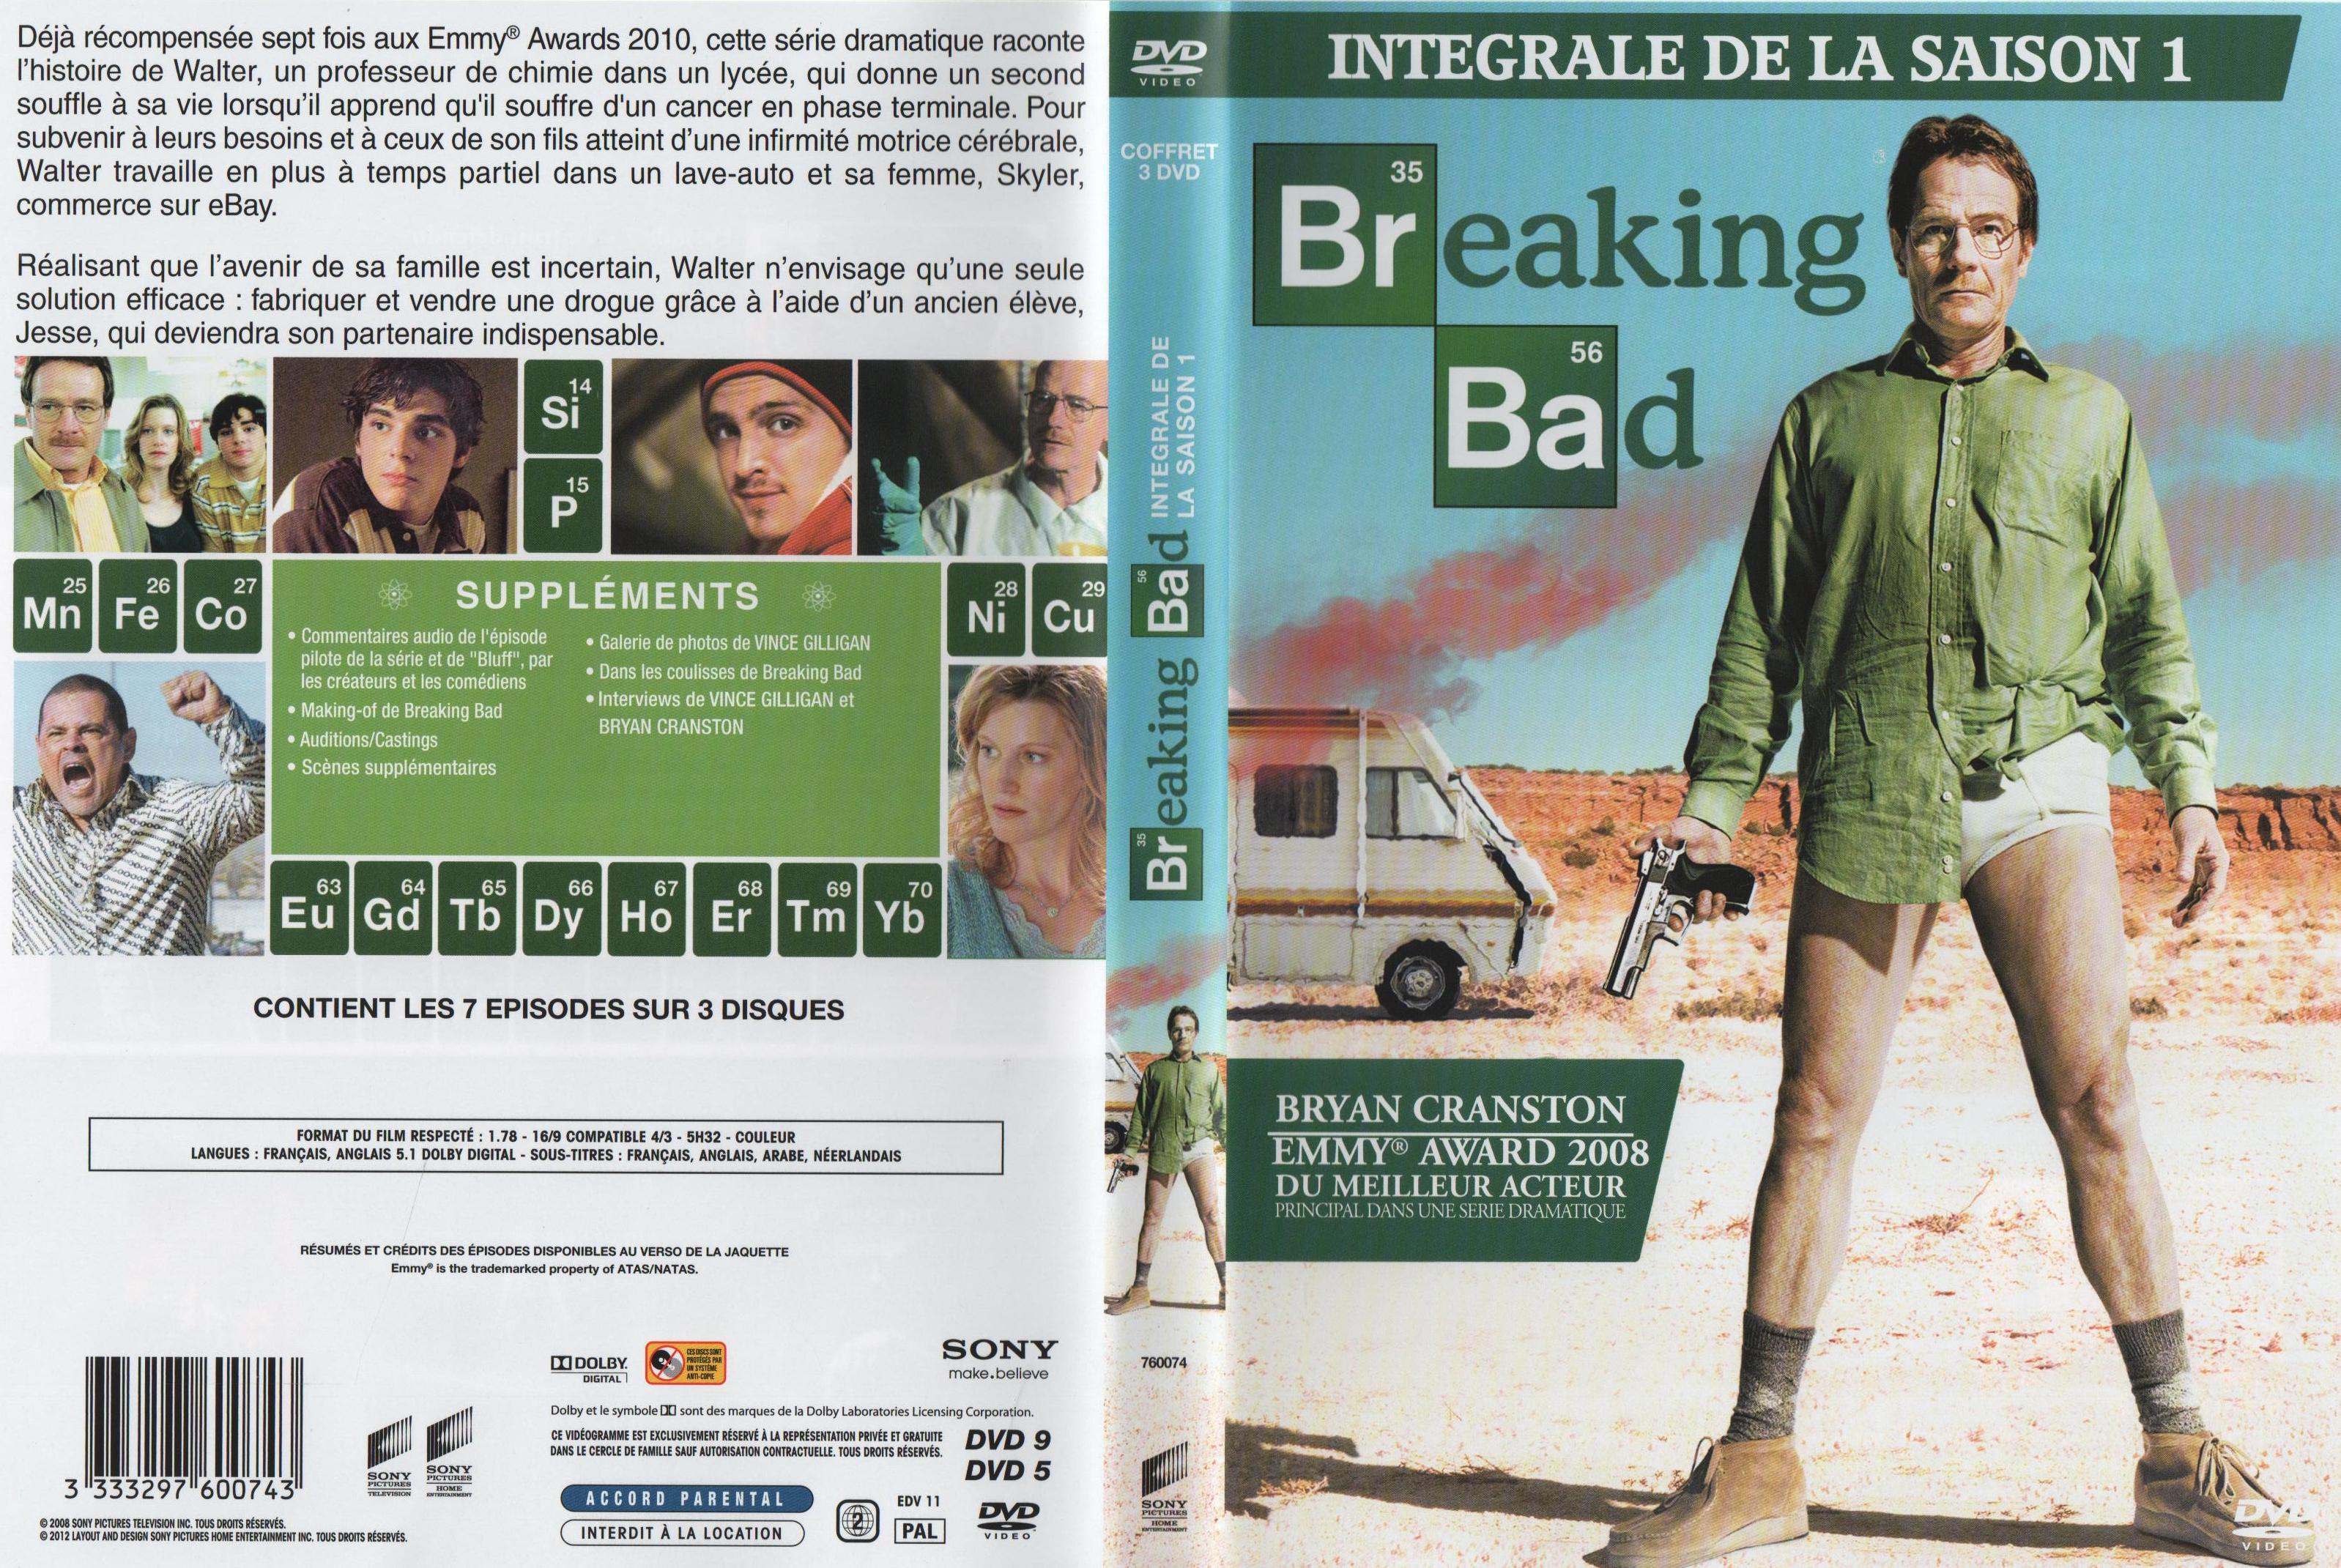 Jaquette DVD Breaking Bad Saison 1 COFFRET